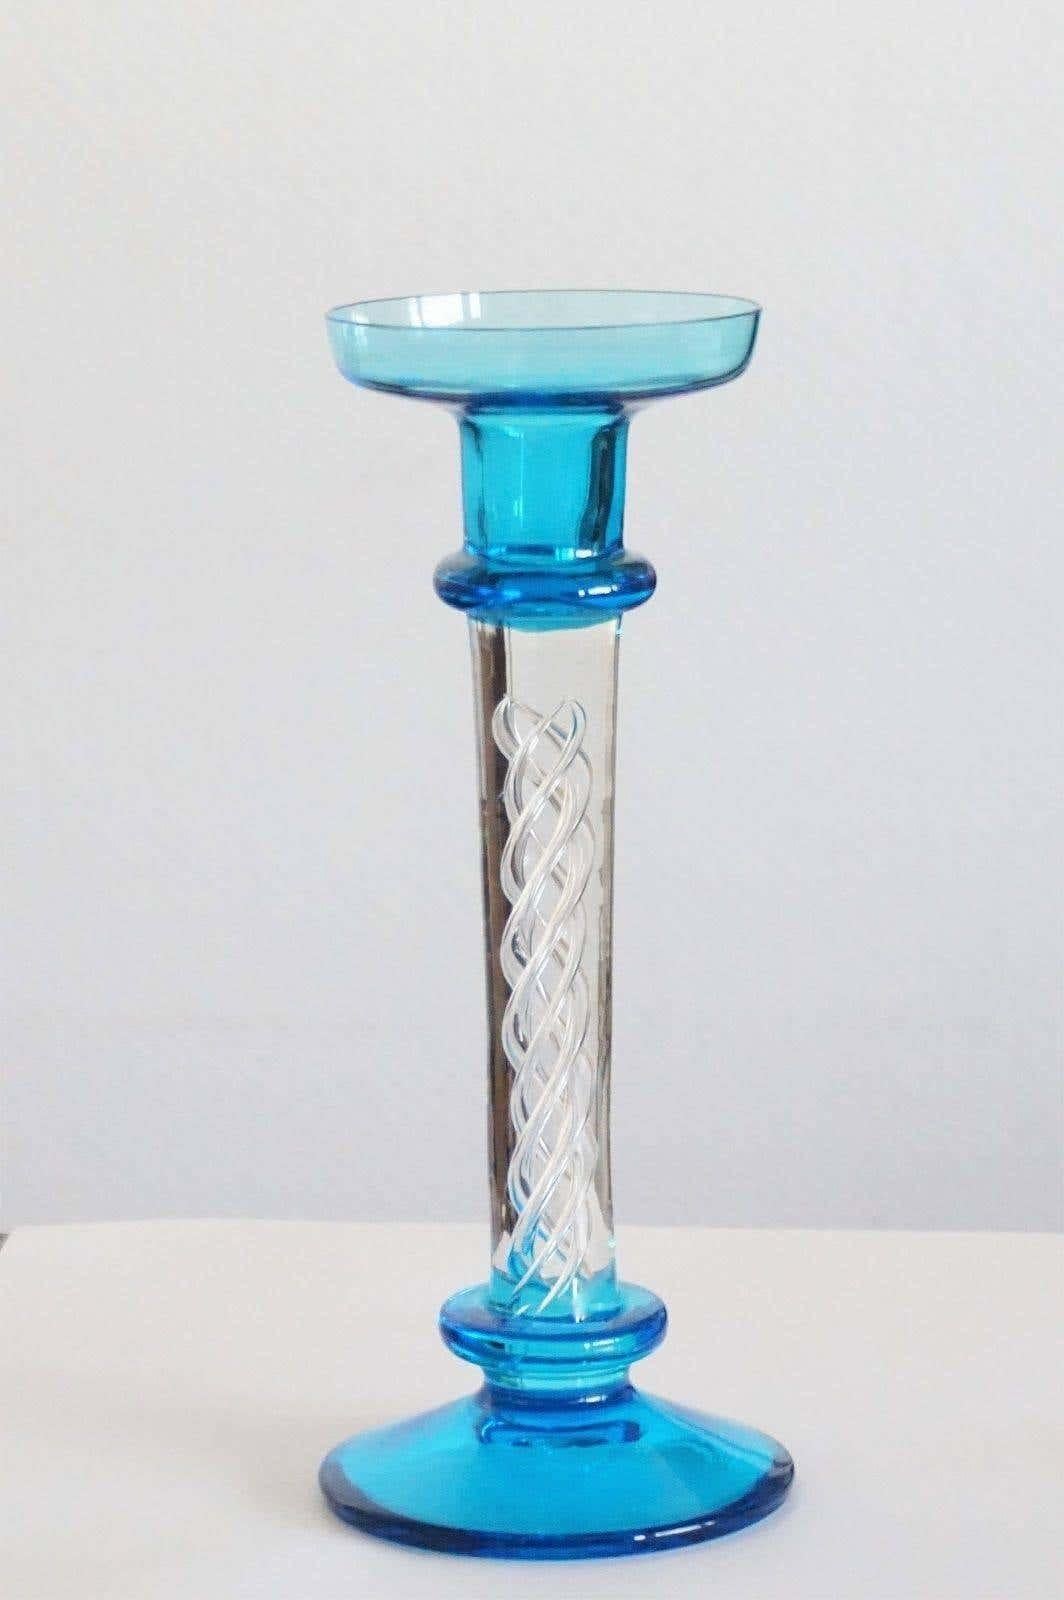 Un très élégant chandelier en verre transparent et turquoise de Murano avec une belle œuvre d'art en verre à l'intérieur, Italie, années 1960, sans dommage.
Mesures : Hauteur 9.45 in (24 cm)
Diamètre/base 10 cm (3.94 in)
Diamètre/top 3.35 in